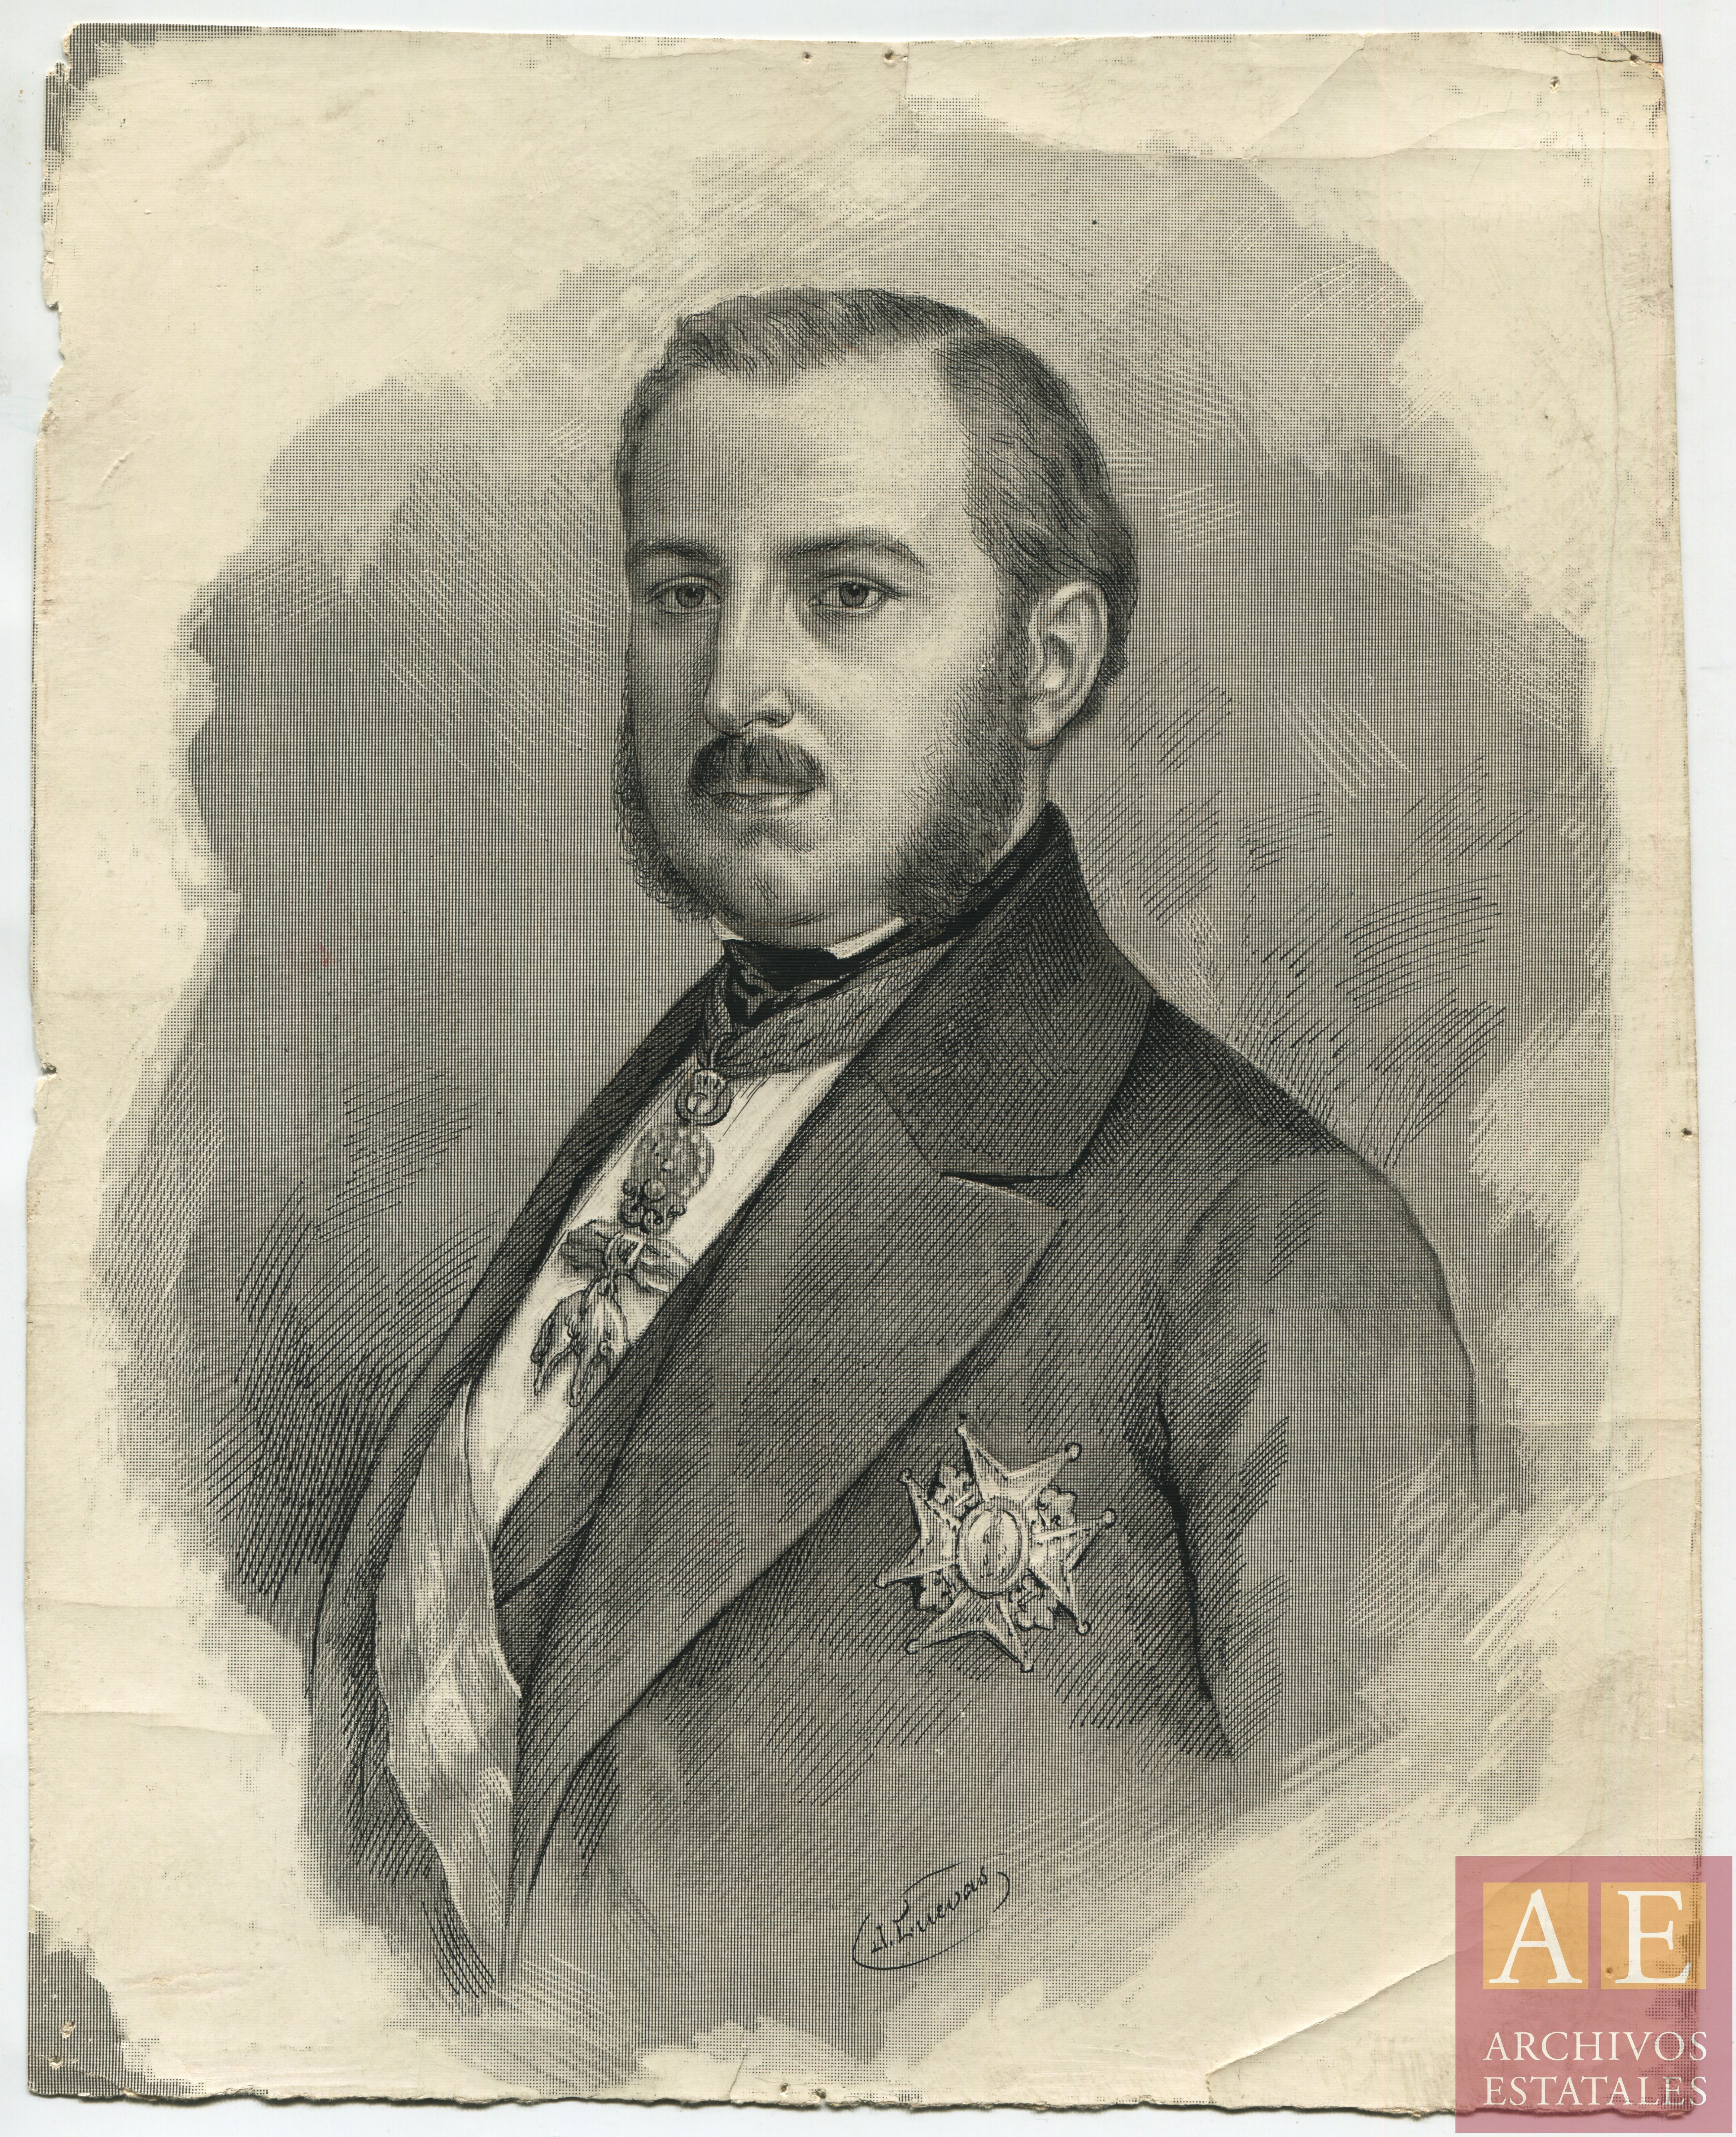 Muñoz Sanchez, Agustín (1808-1873)